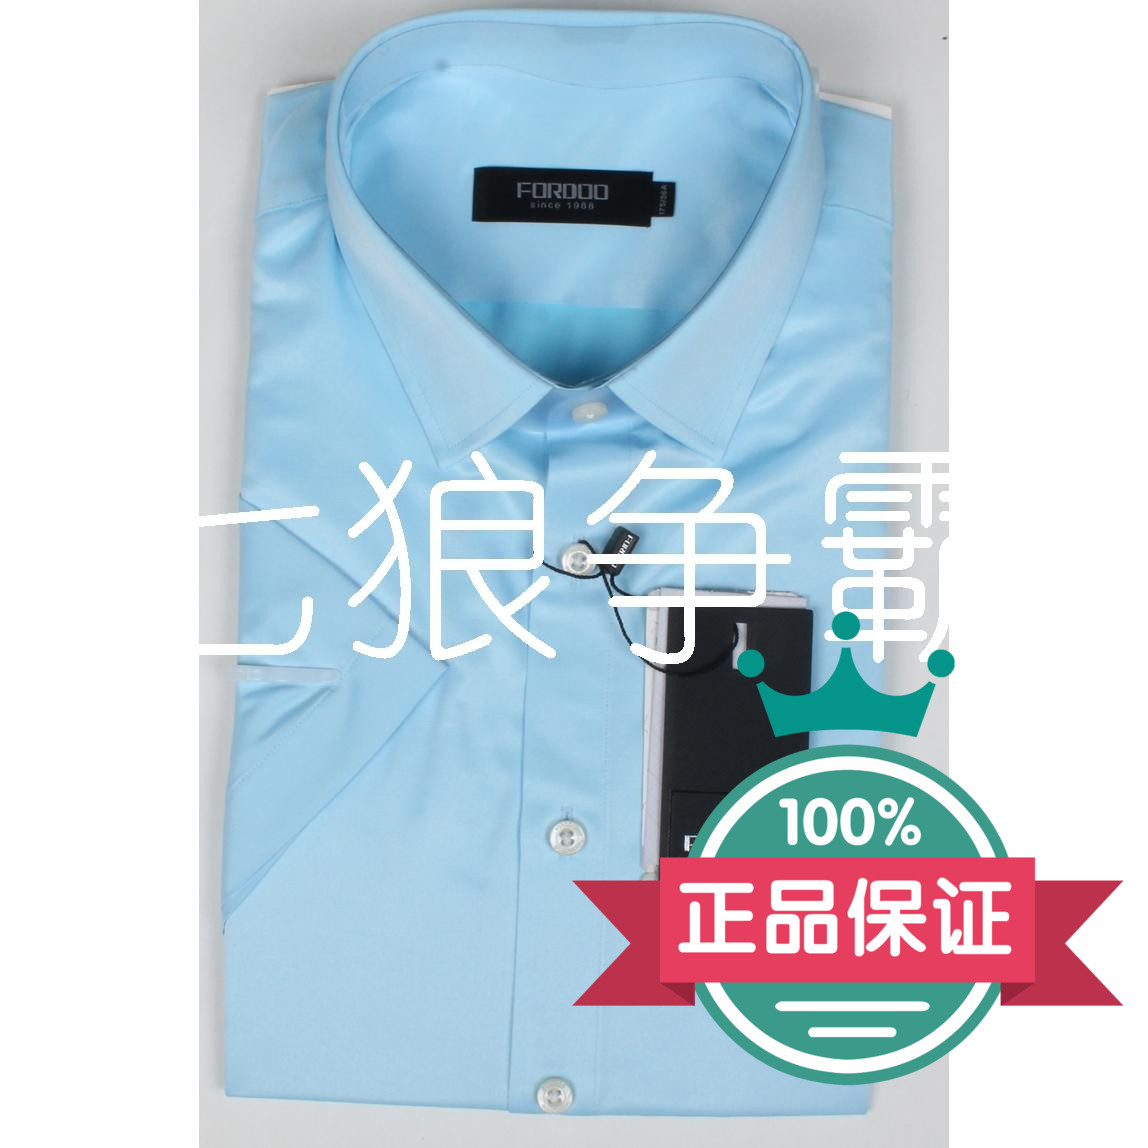 虎都正品男装2016年夏季新款棉+再生纤维素纤维衬衫 EH2AHA6020J